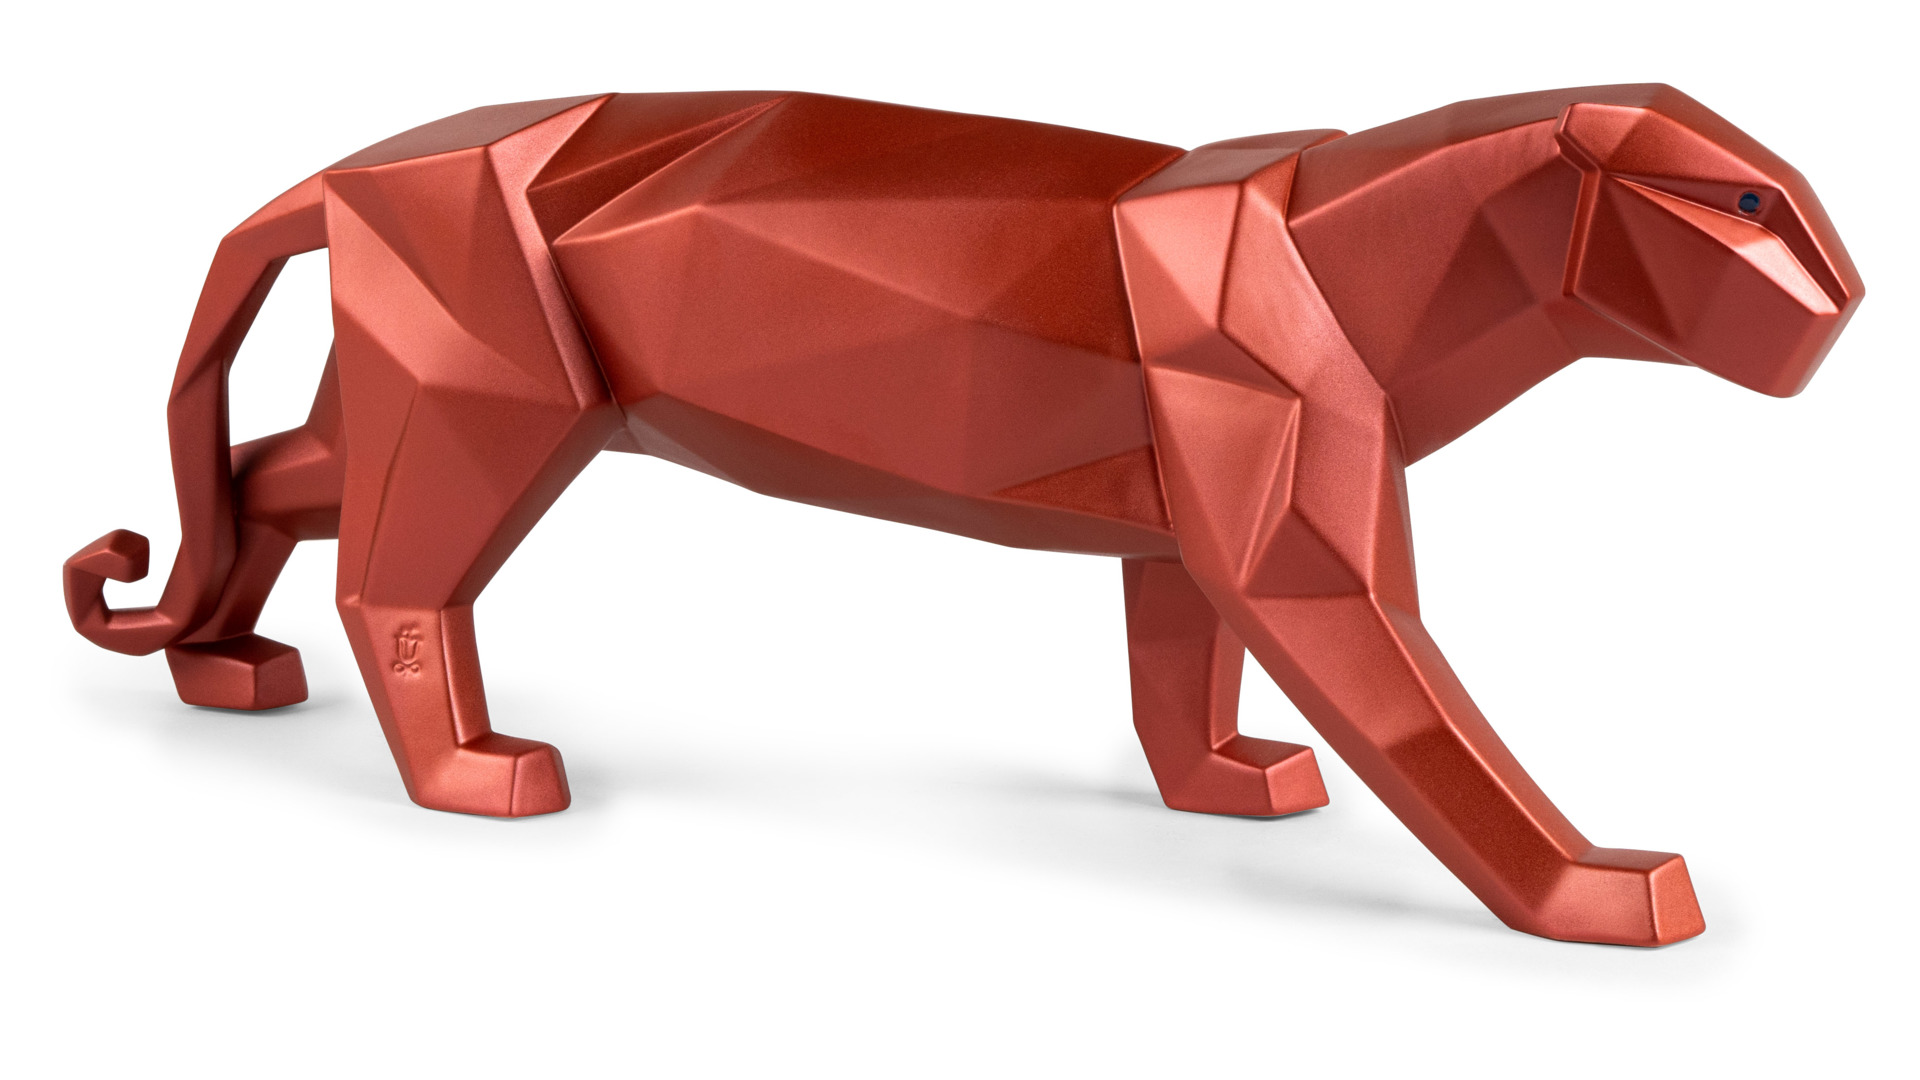 Фигурка Lladro Пантера оригами 50х12 см, фарфор, красный металлик, фарфор